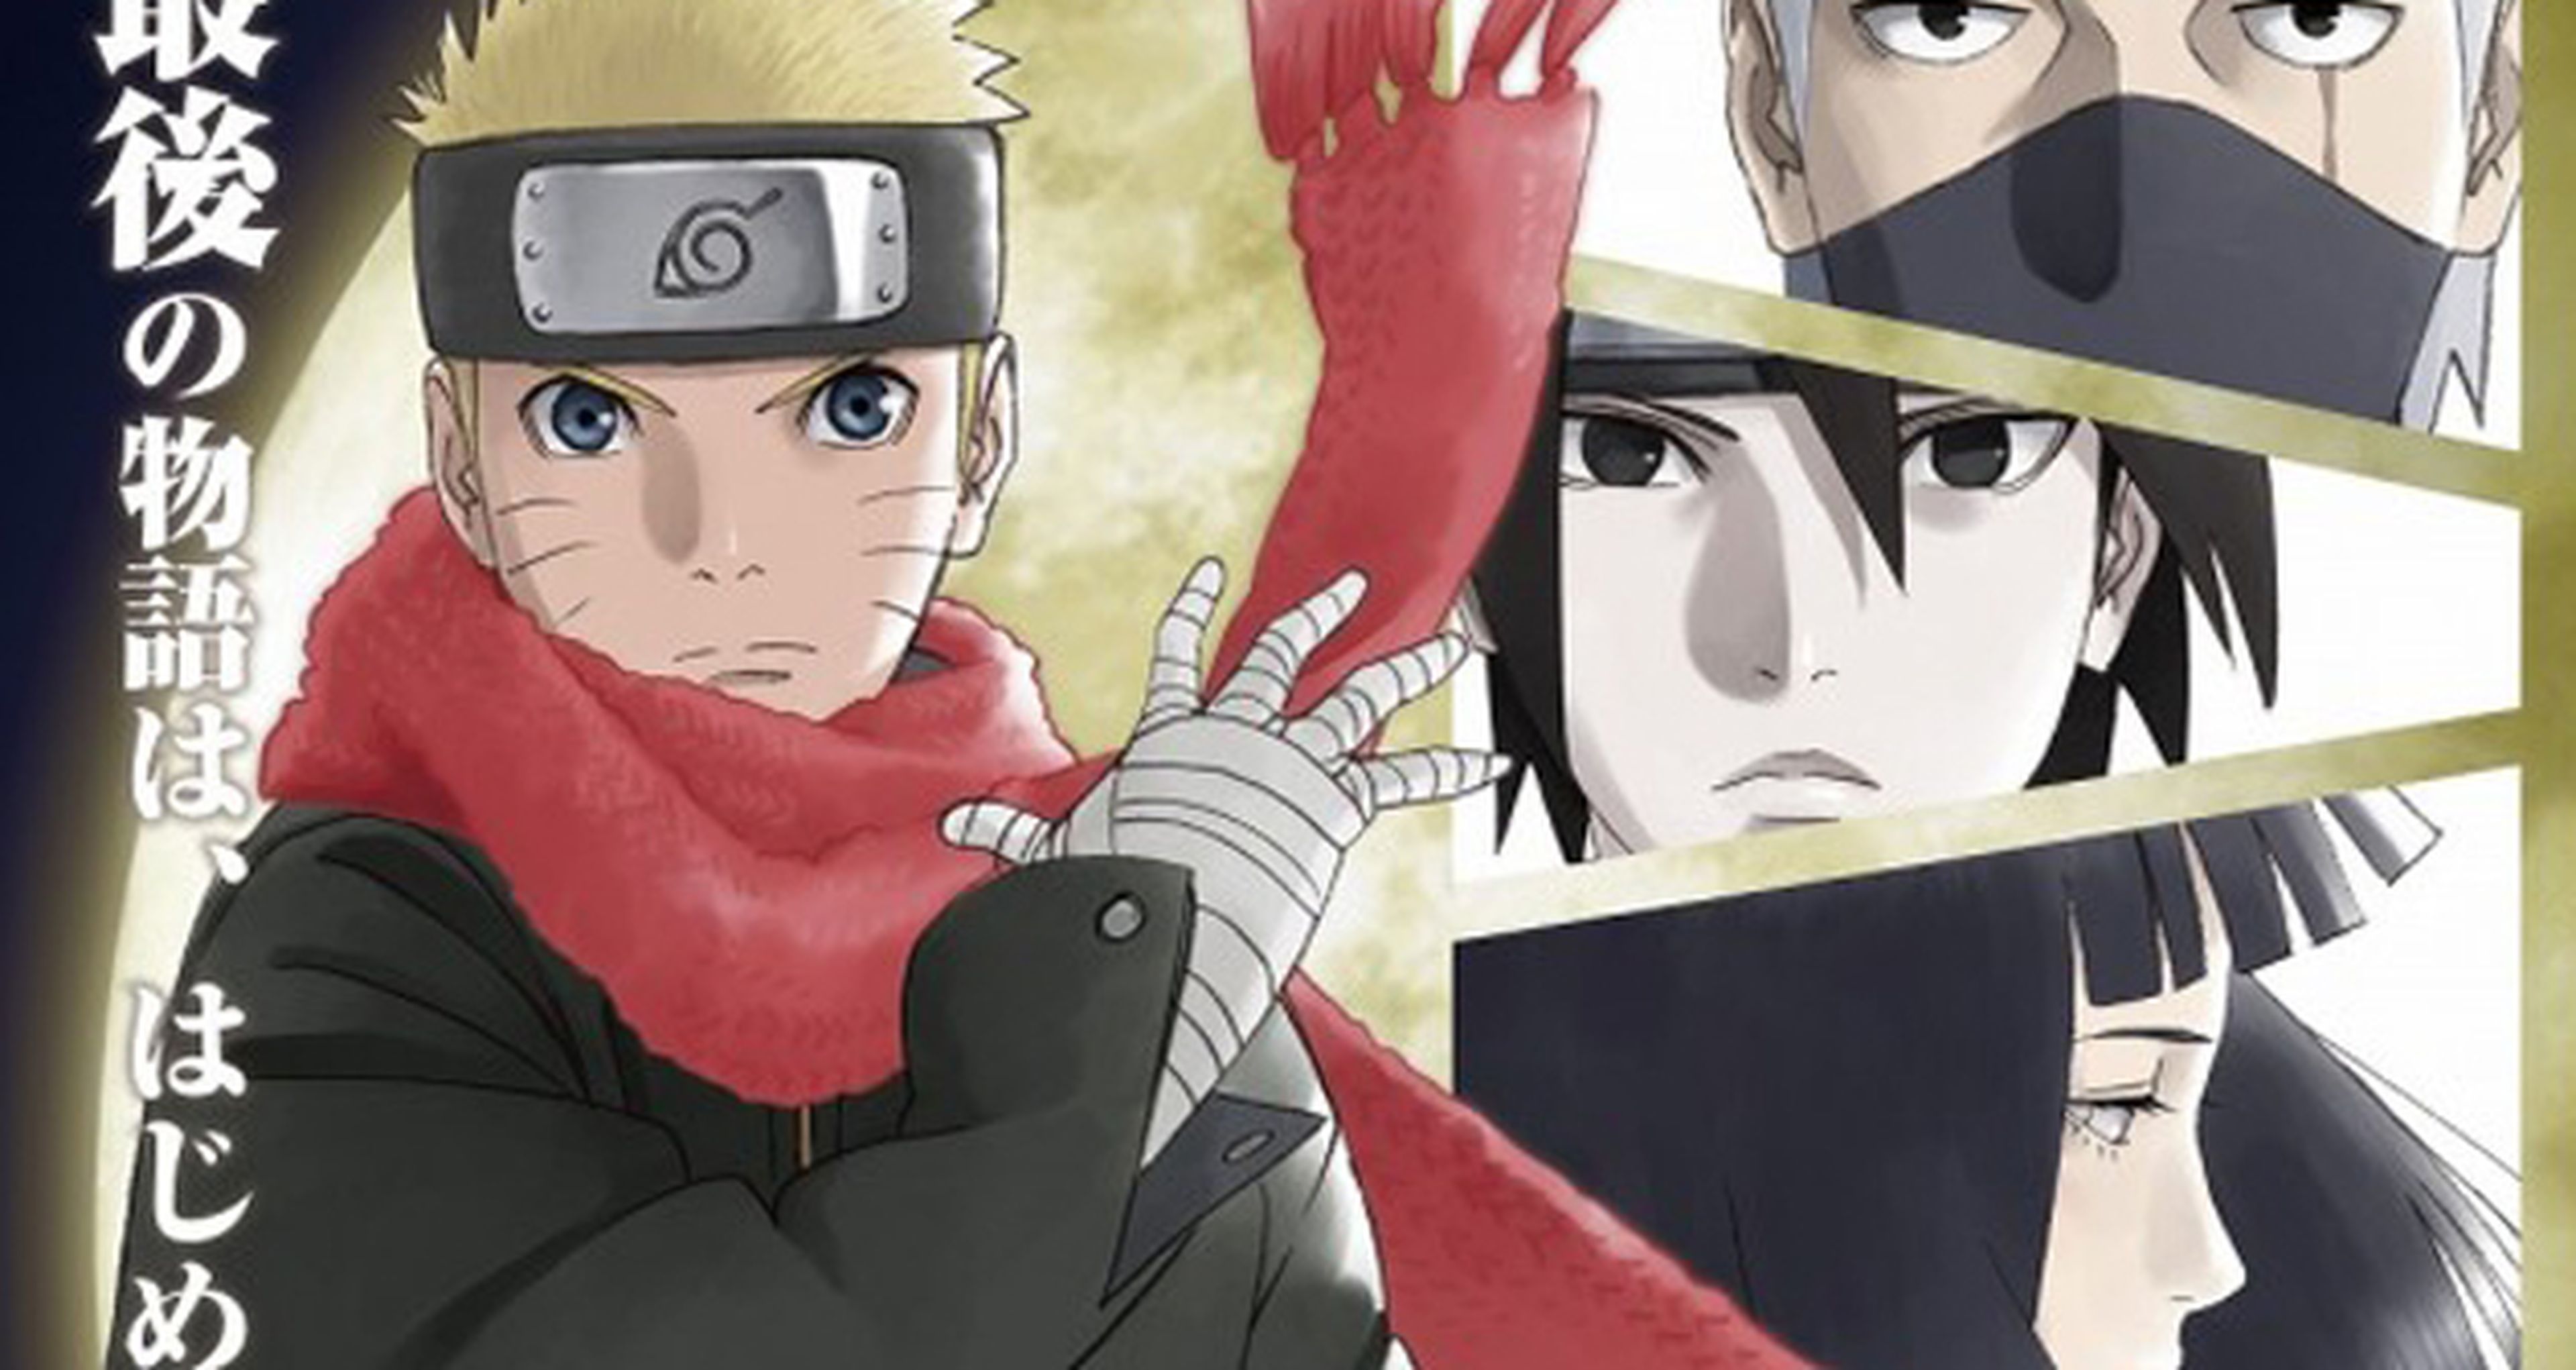 Desvelado el póster de The Last -Naruto the Movie-